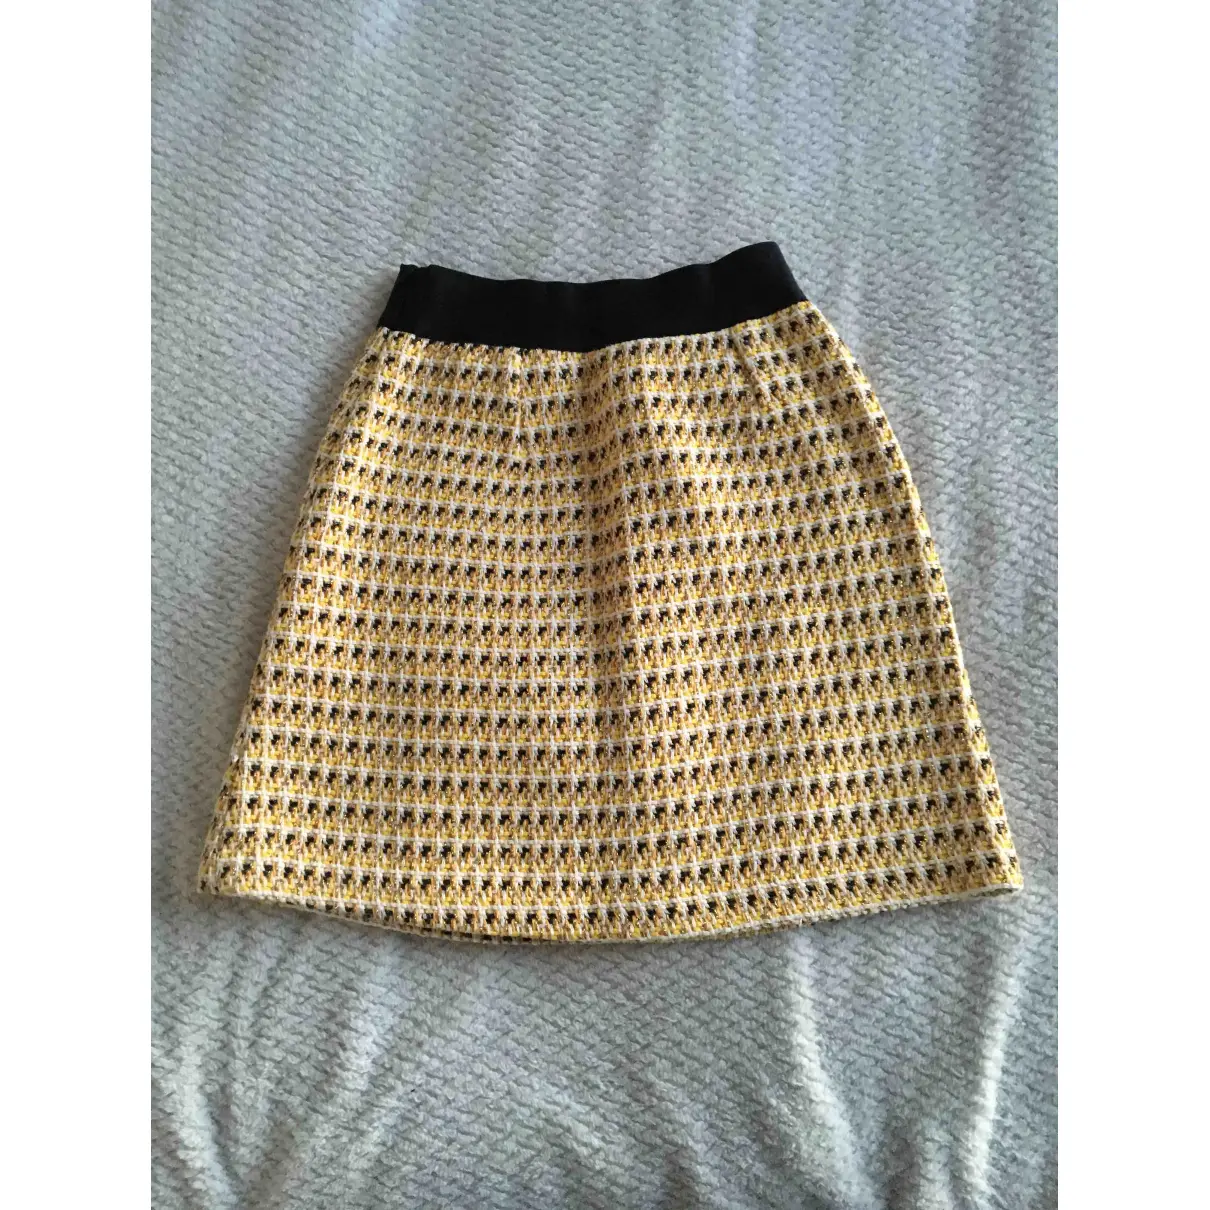 Buy Maje Spring Summer 2019 mini skirt online